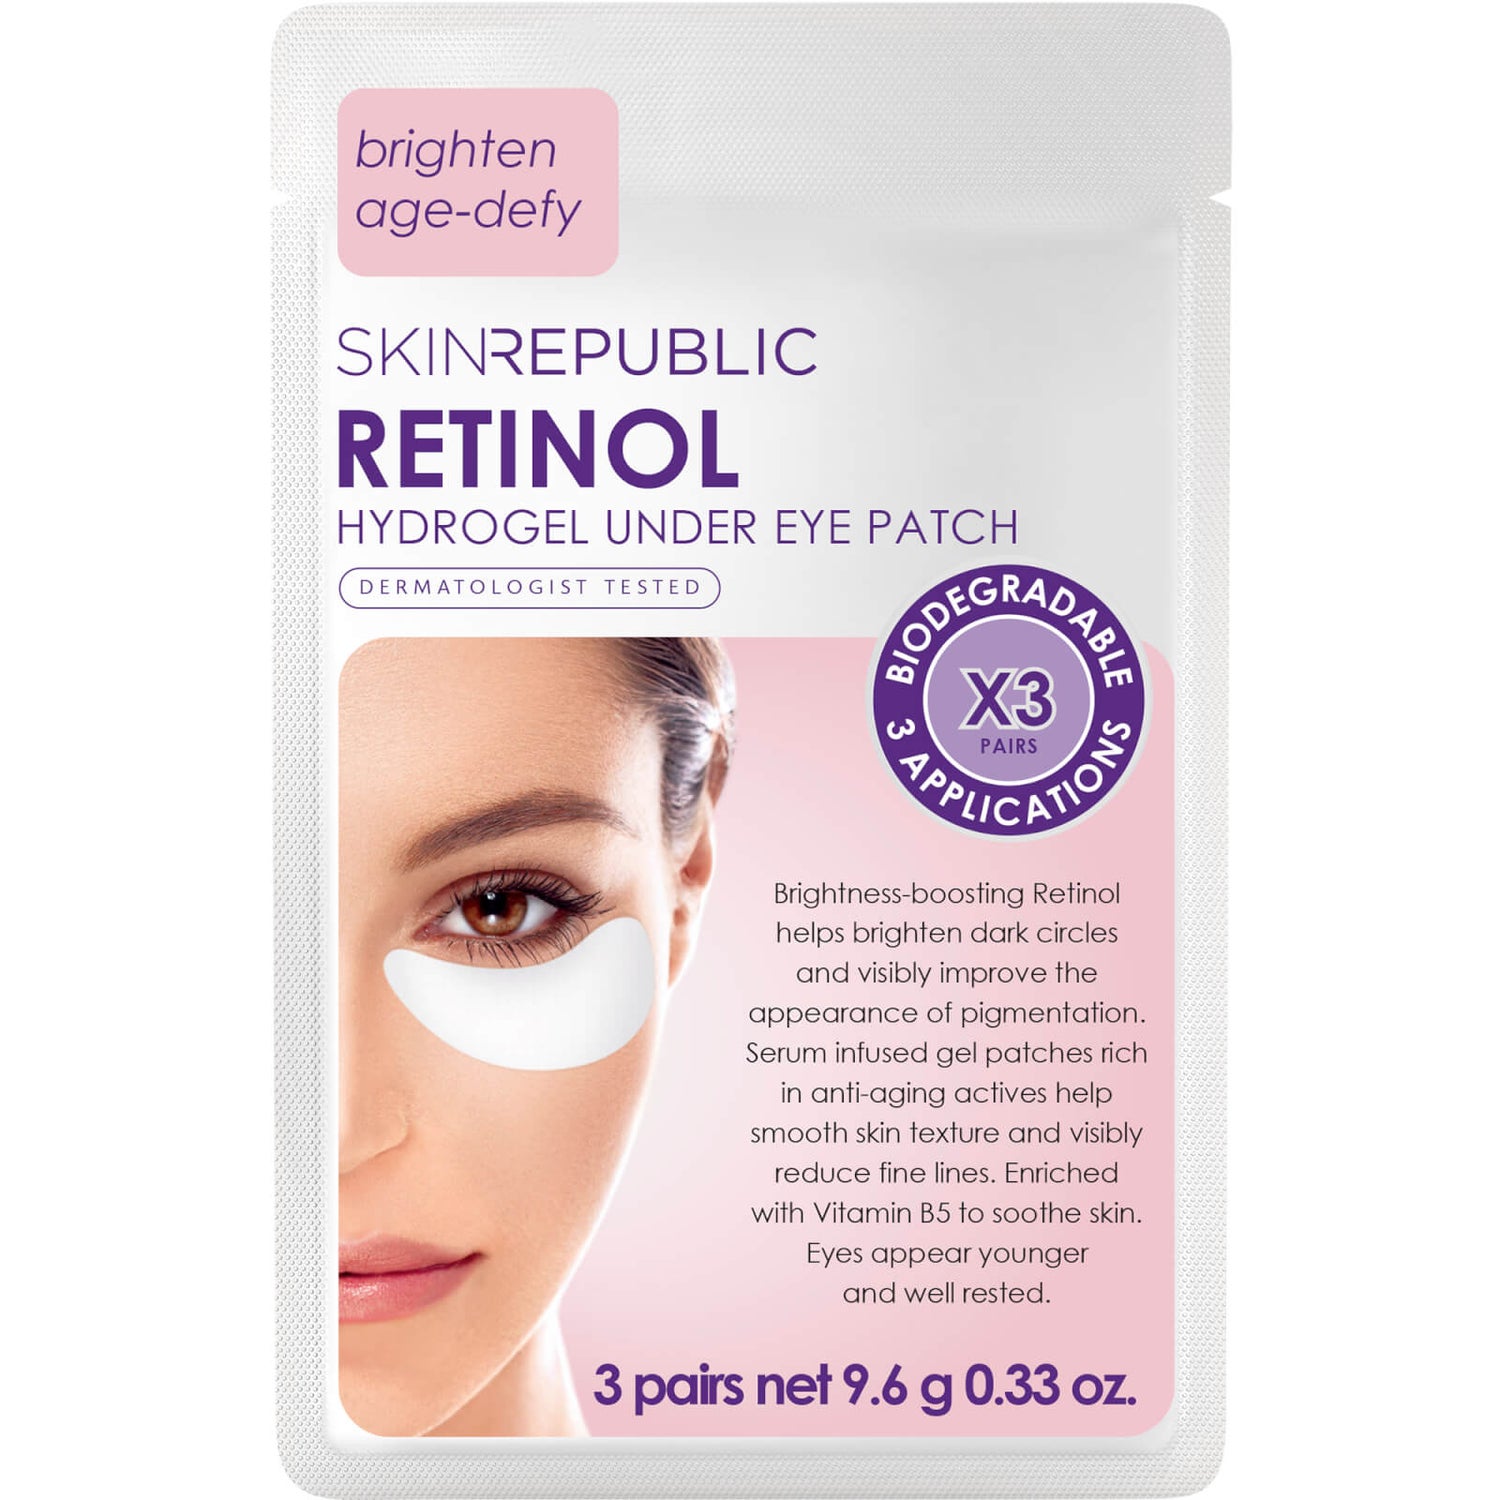 Skin Republic Retinol Under Eye Patches 9.6g